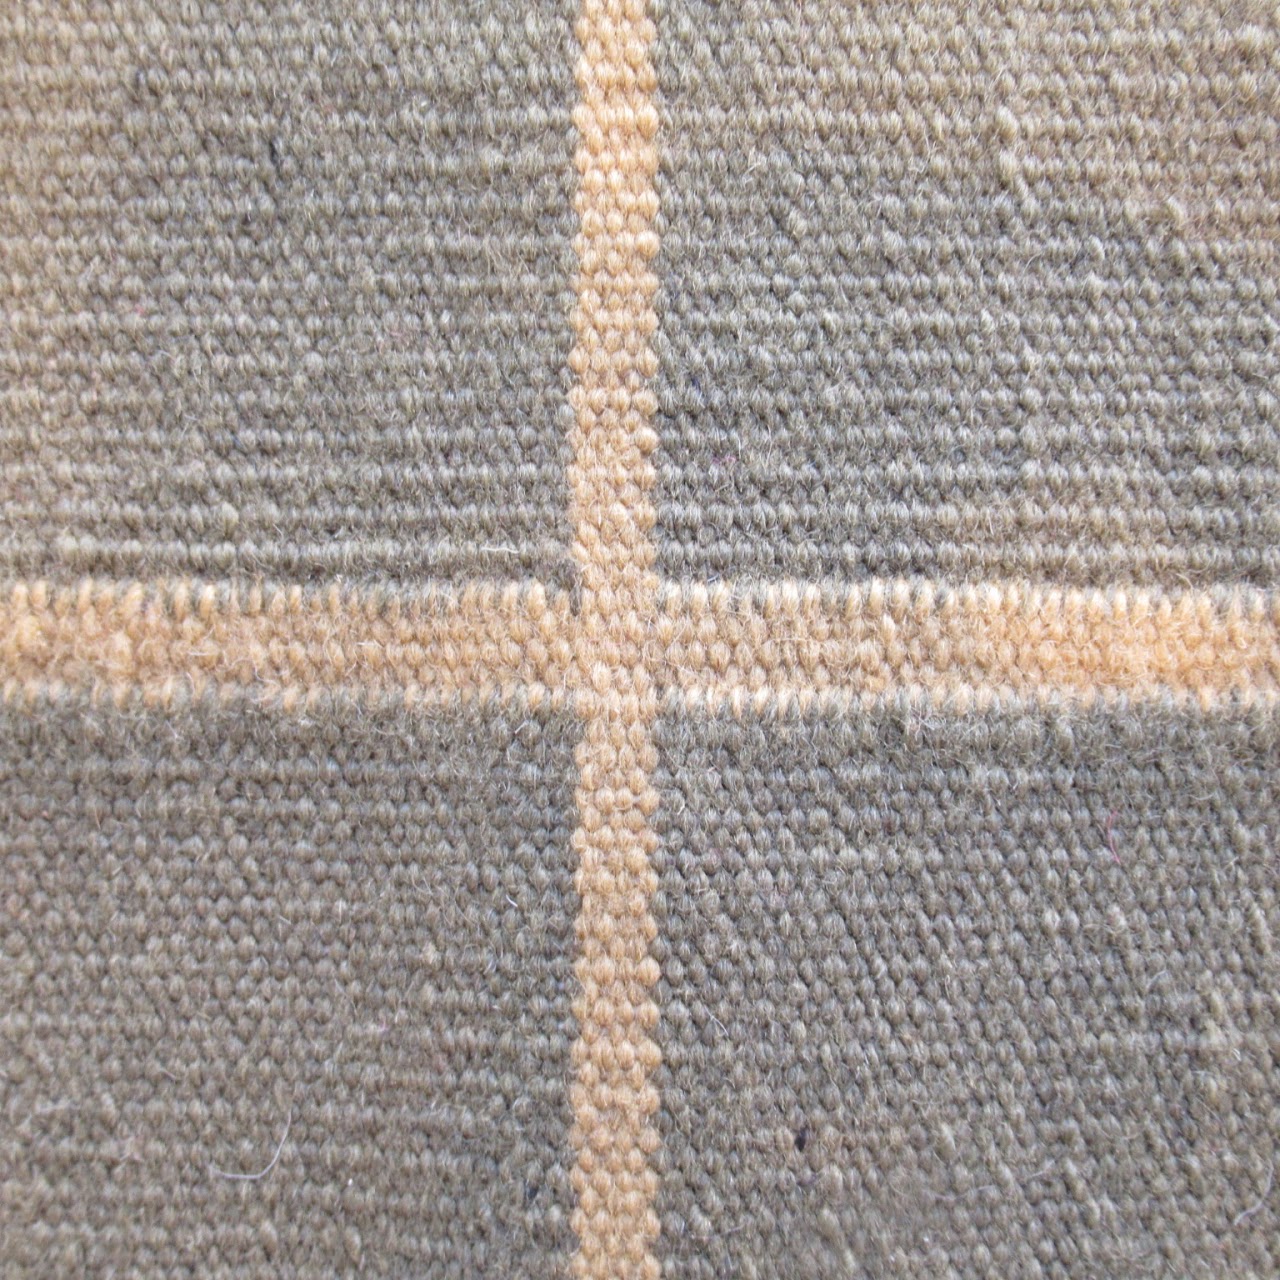 Oversized Plaid Wool Area Rug 4